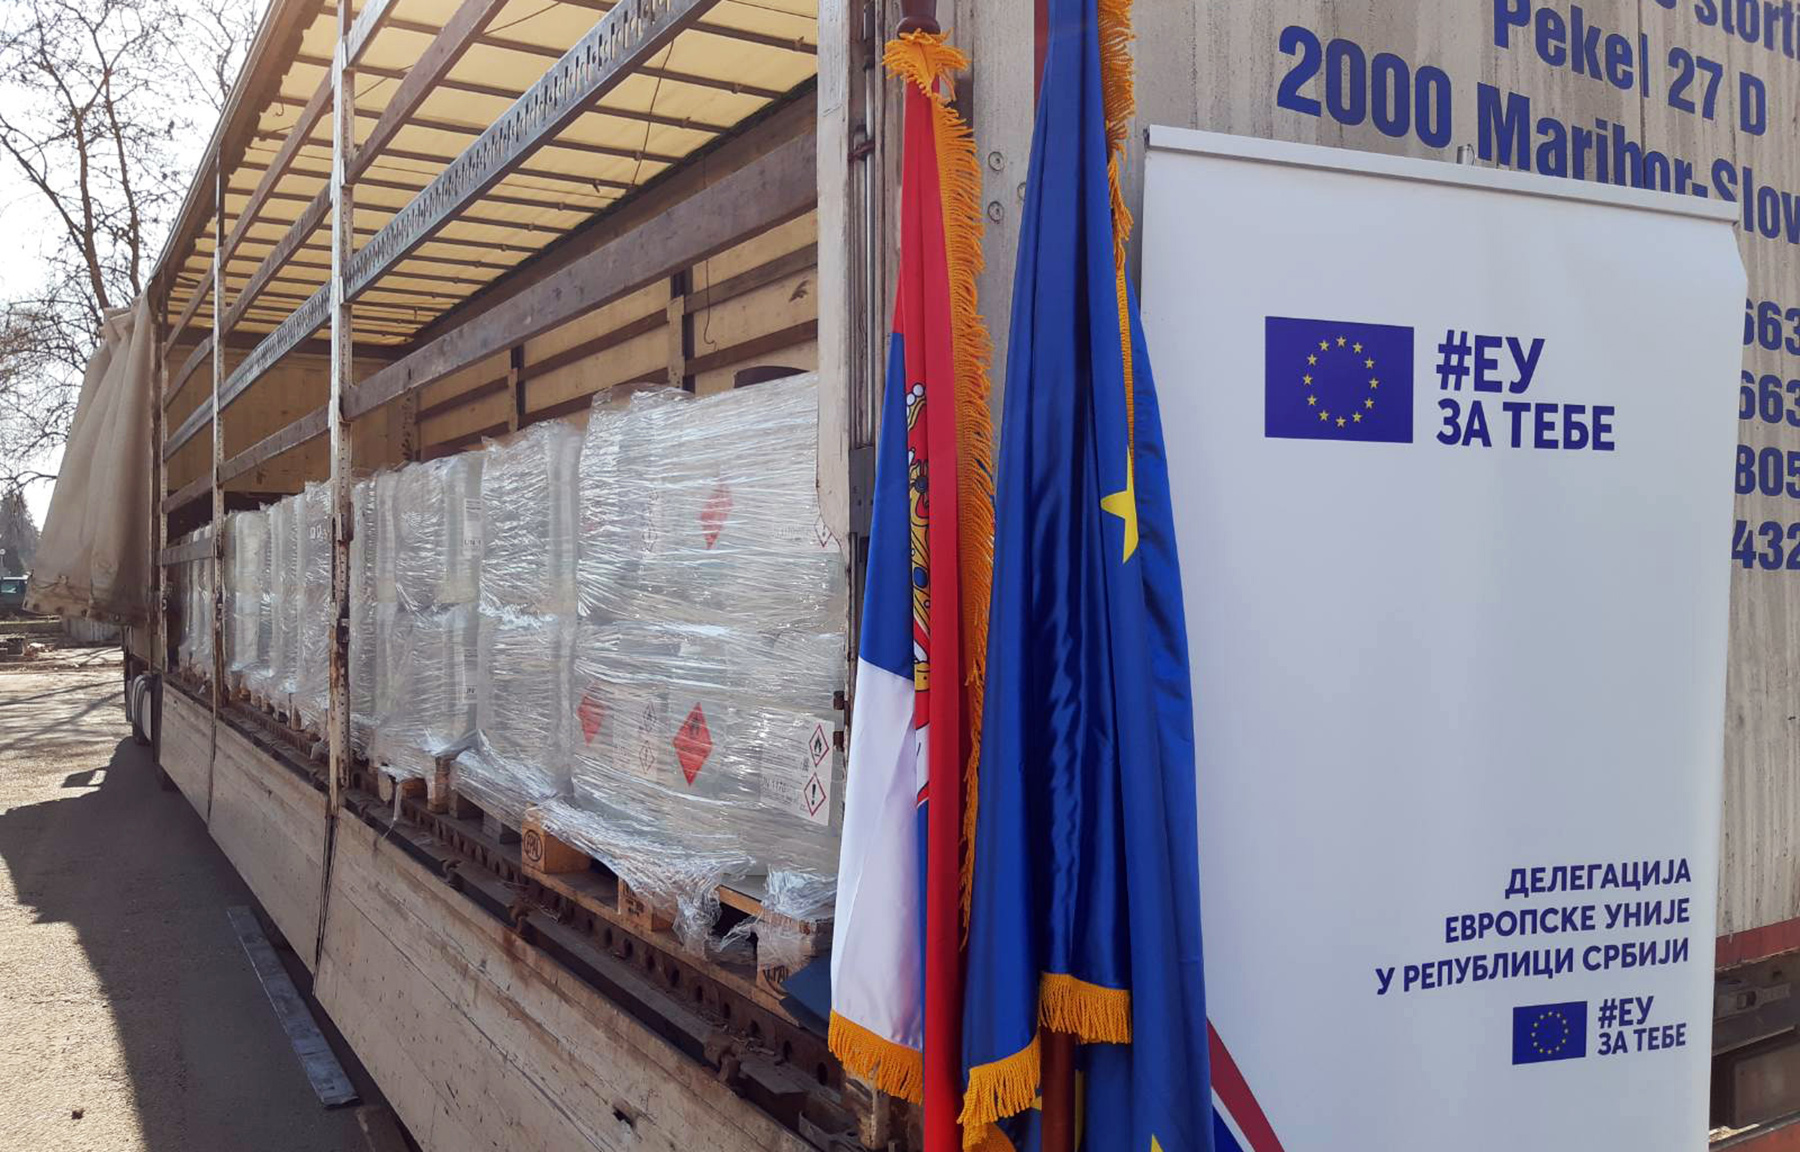 Европска унија доставила хуманитарну помоћ у склопу Механизма цивилне ЕУ